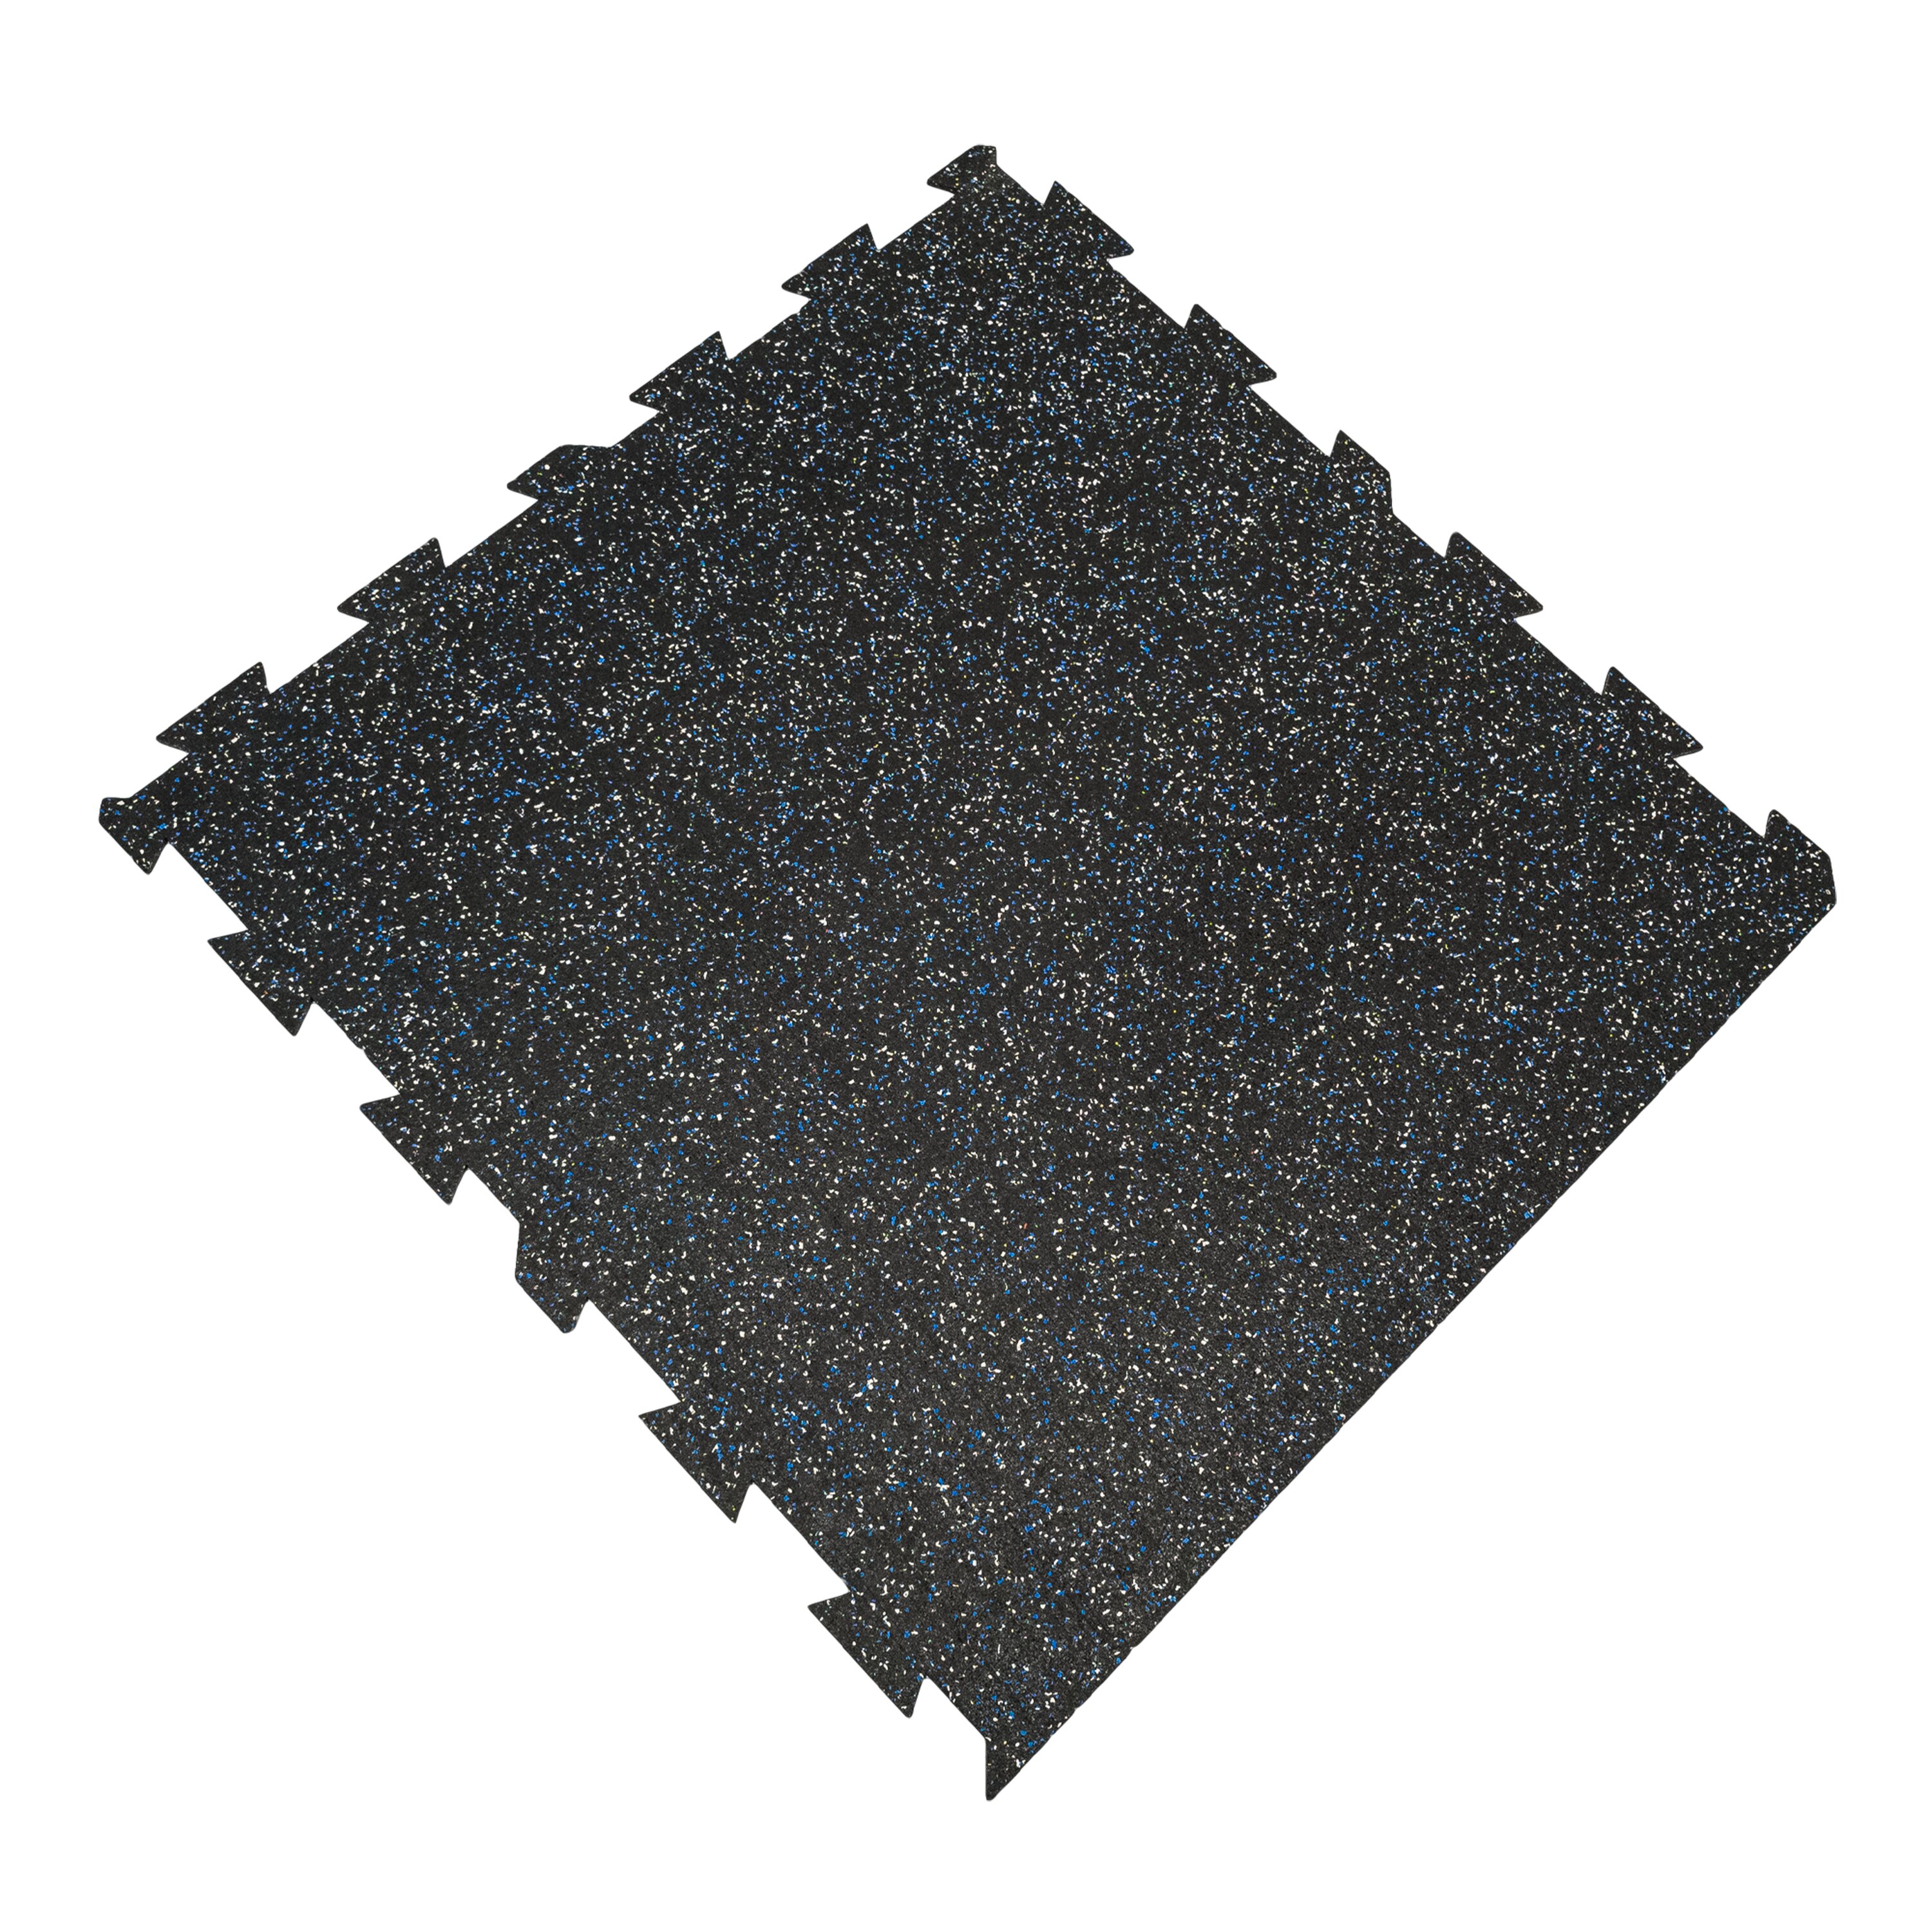 Černo-bílo-modrá gumová puzzle modulová dlaždice (okraj) FLOMA SF1050 FitFlo - délka 100 cm, šířka 100 cm, výška 1,6 cm